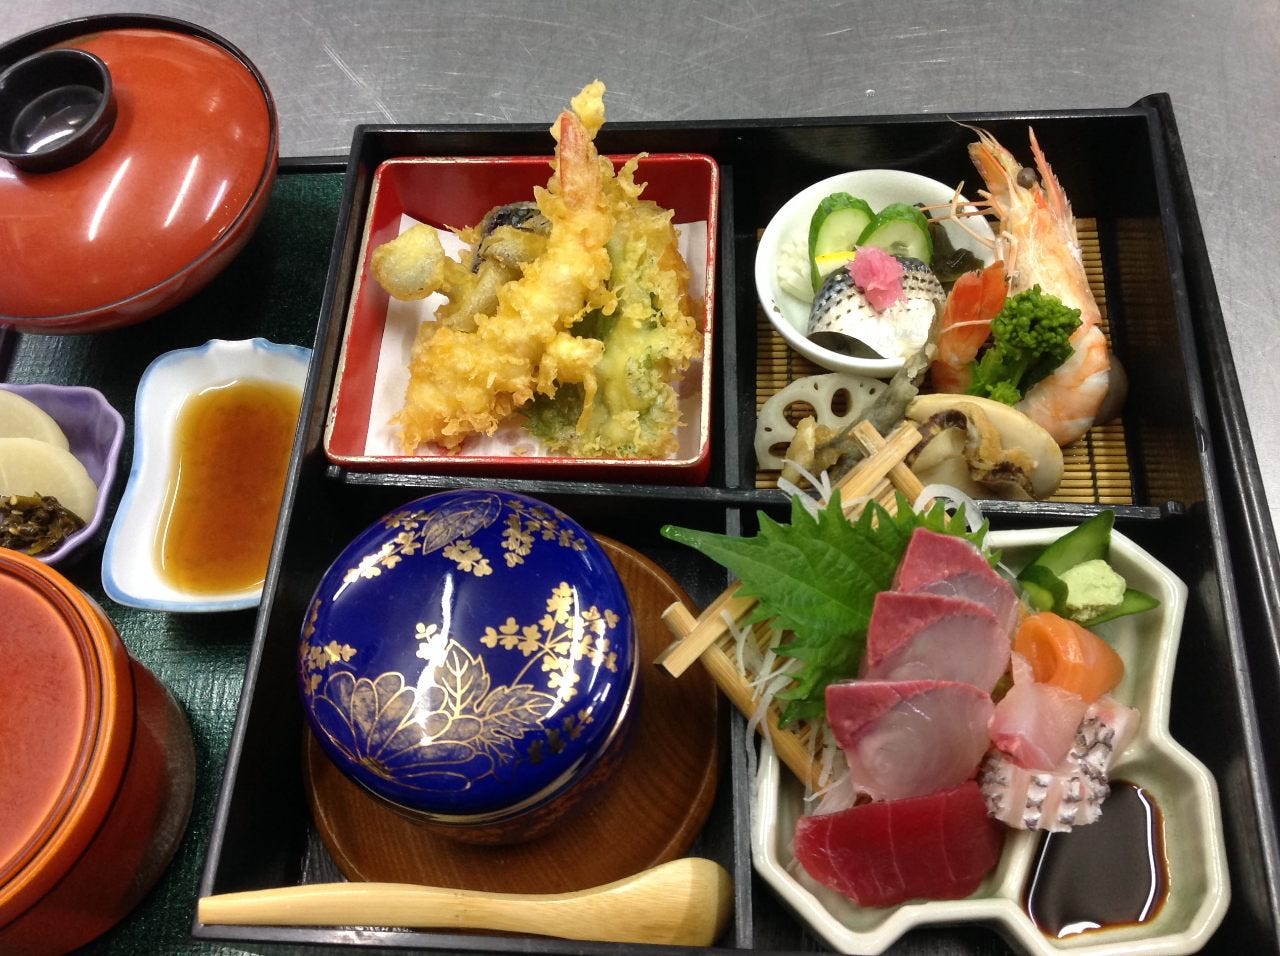 錦
天ぷら・焚物・酢の物・刺身色々味を楽しみたい方にオススメ